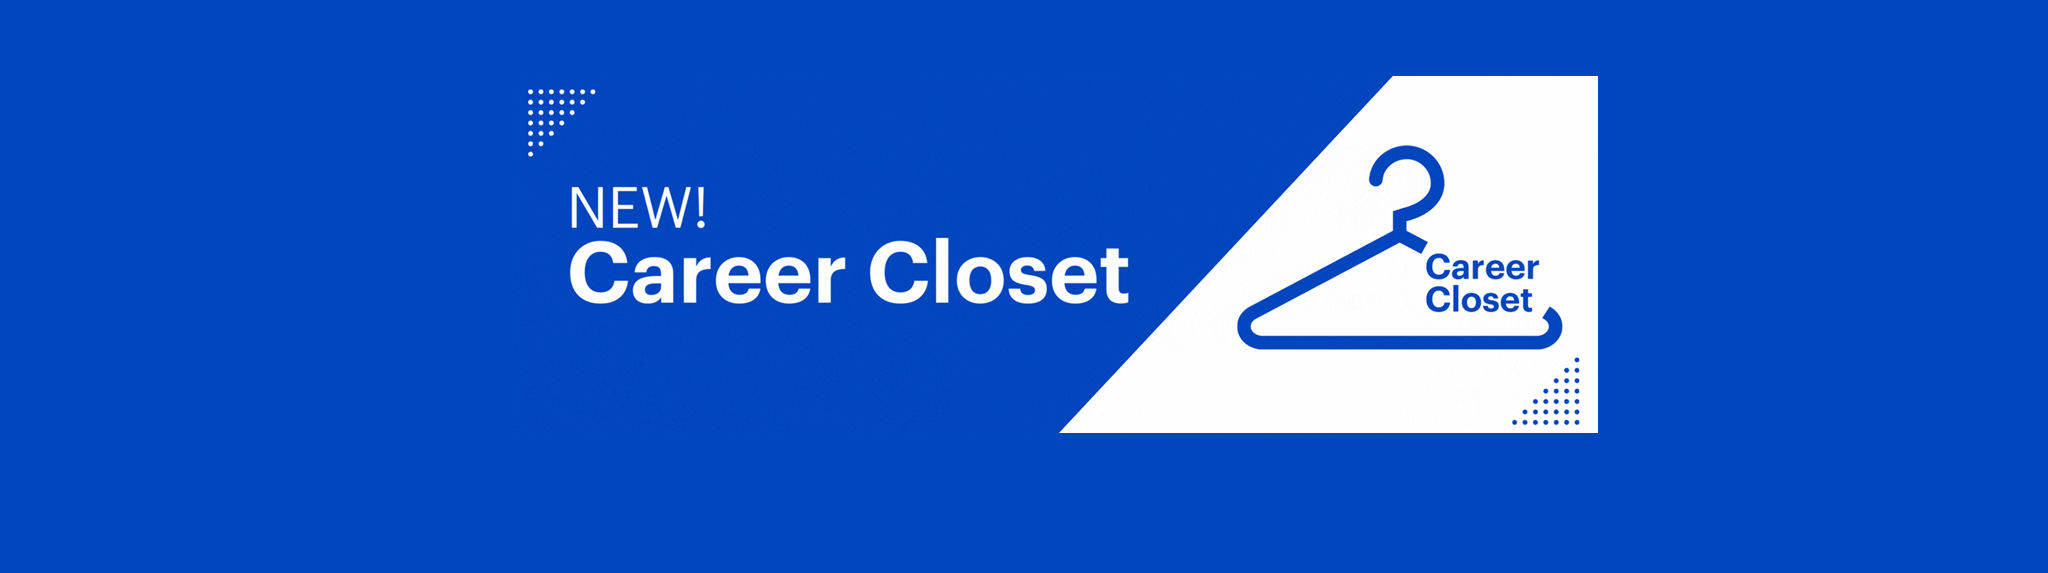 career closet